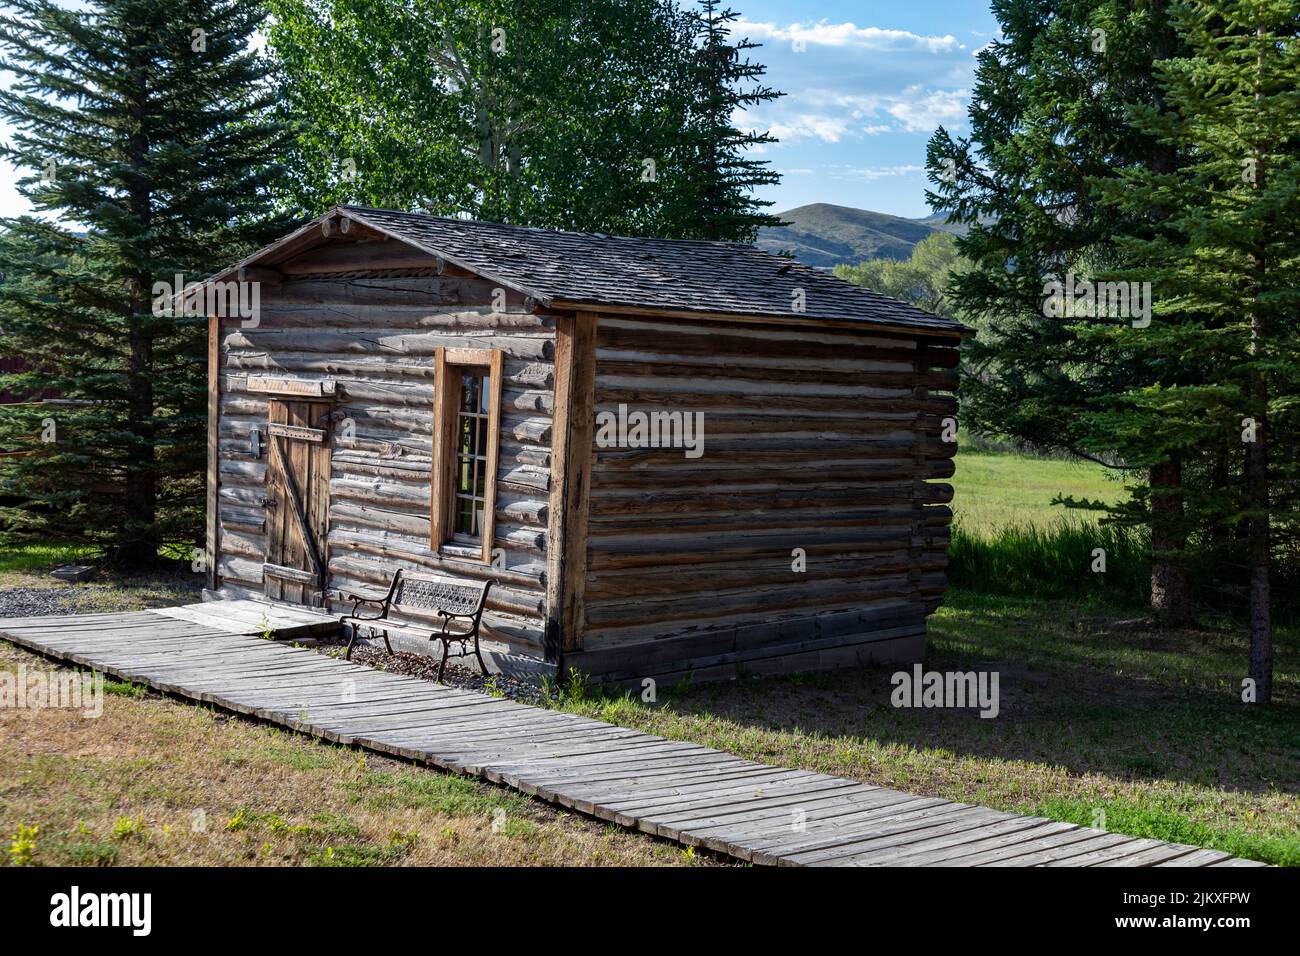 Accampamento, Wyoming - il Grand Encampment Museum mette in evidenza la storia mineraria, ranching, e di registrazione della città. Il museo comprende un sch a una stanza Foto Stock